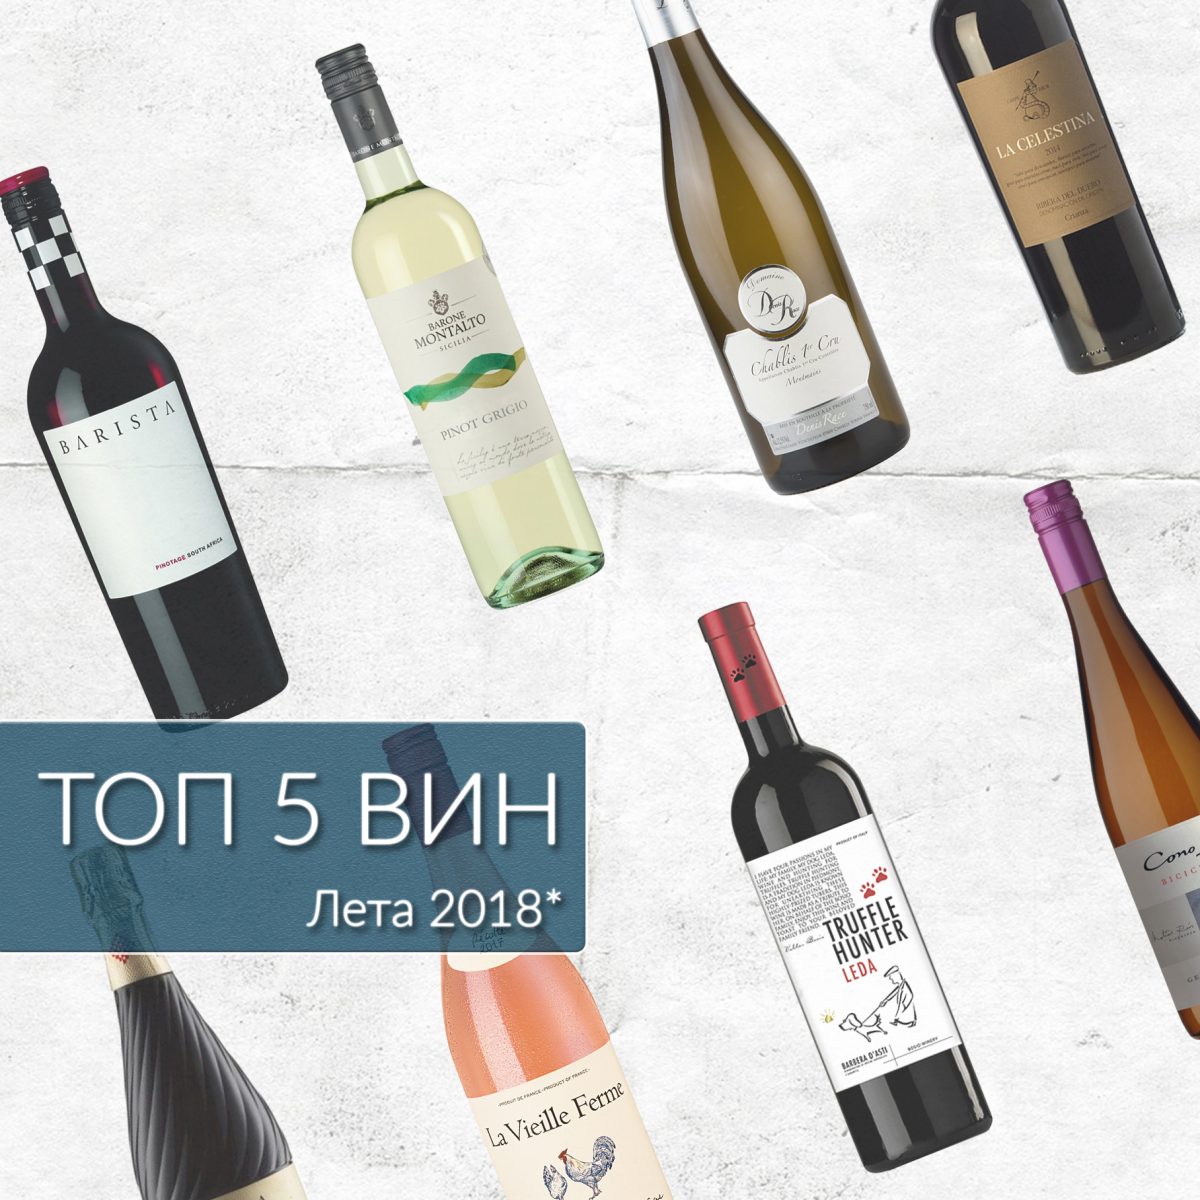 рейтинг вин лета 2018 по версии сайта Такое Вино